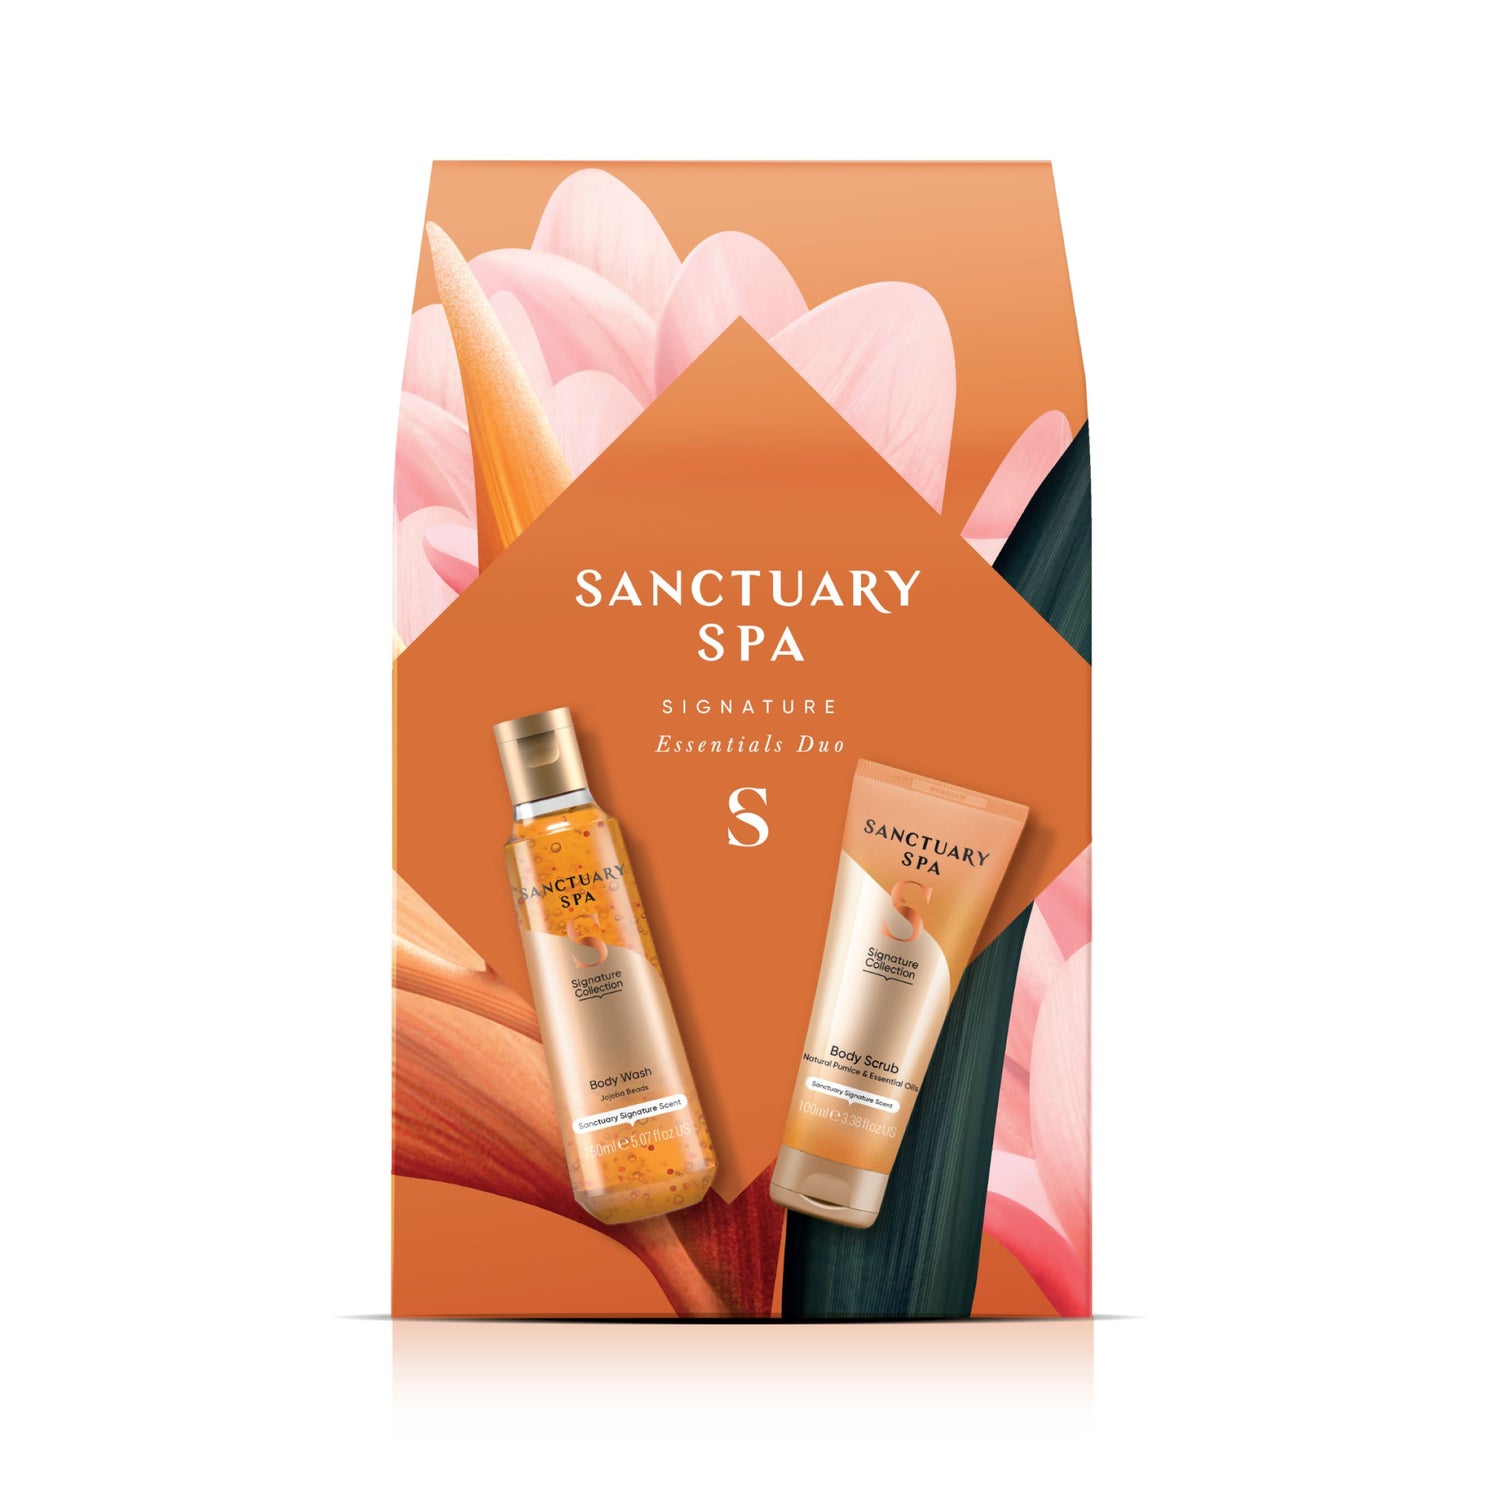 SANCTUARY SPA Signature Essentials Duo Gift Set 